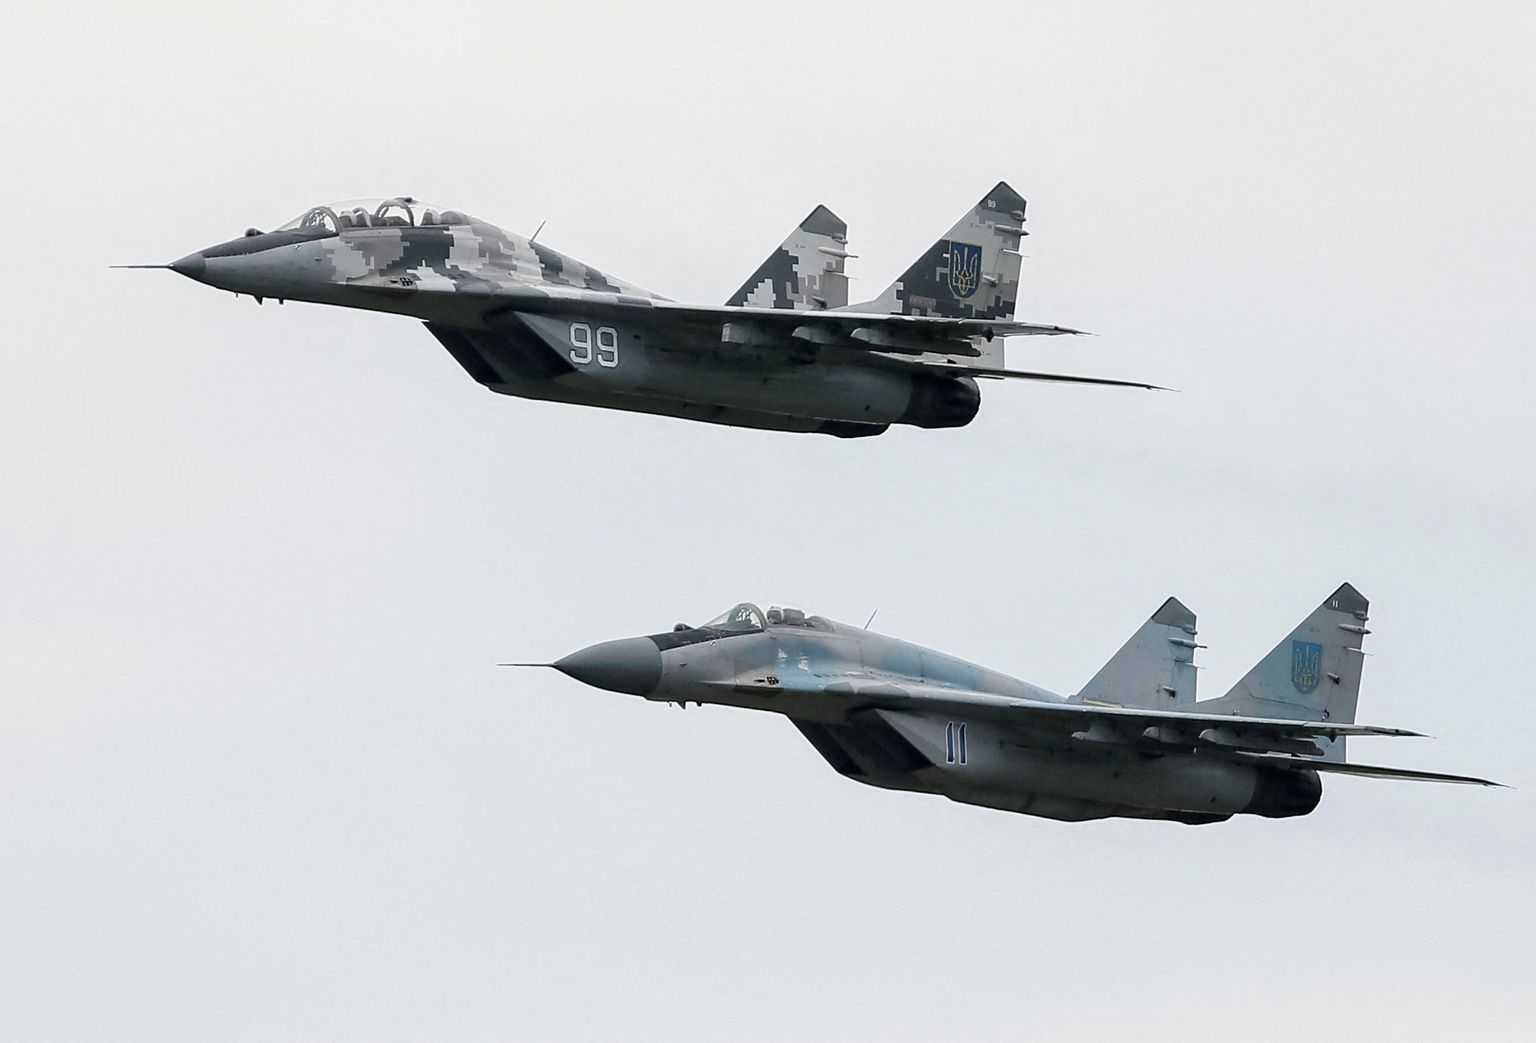 Kaks Ukraina MiG-29 hävituslennukit lendamas 3. augustil 2016 Vasõlkivi õhujõudude baasi